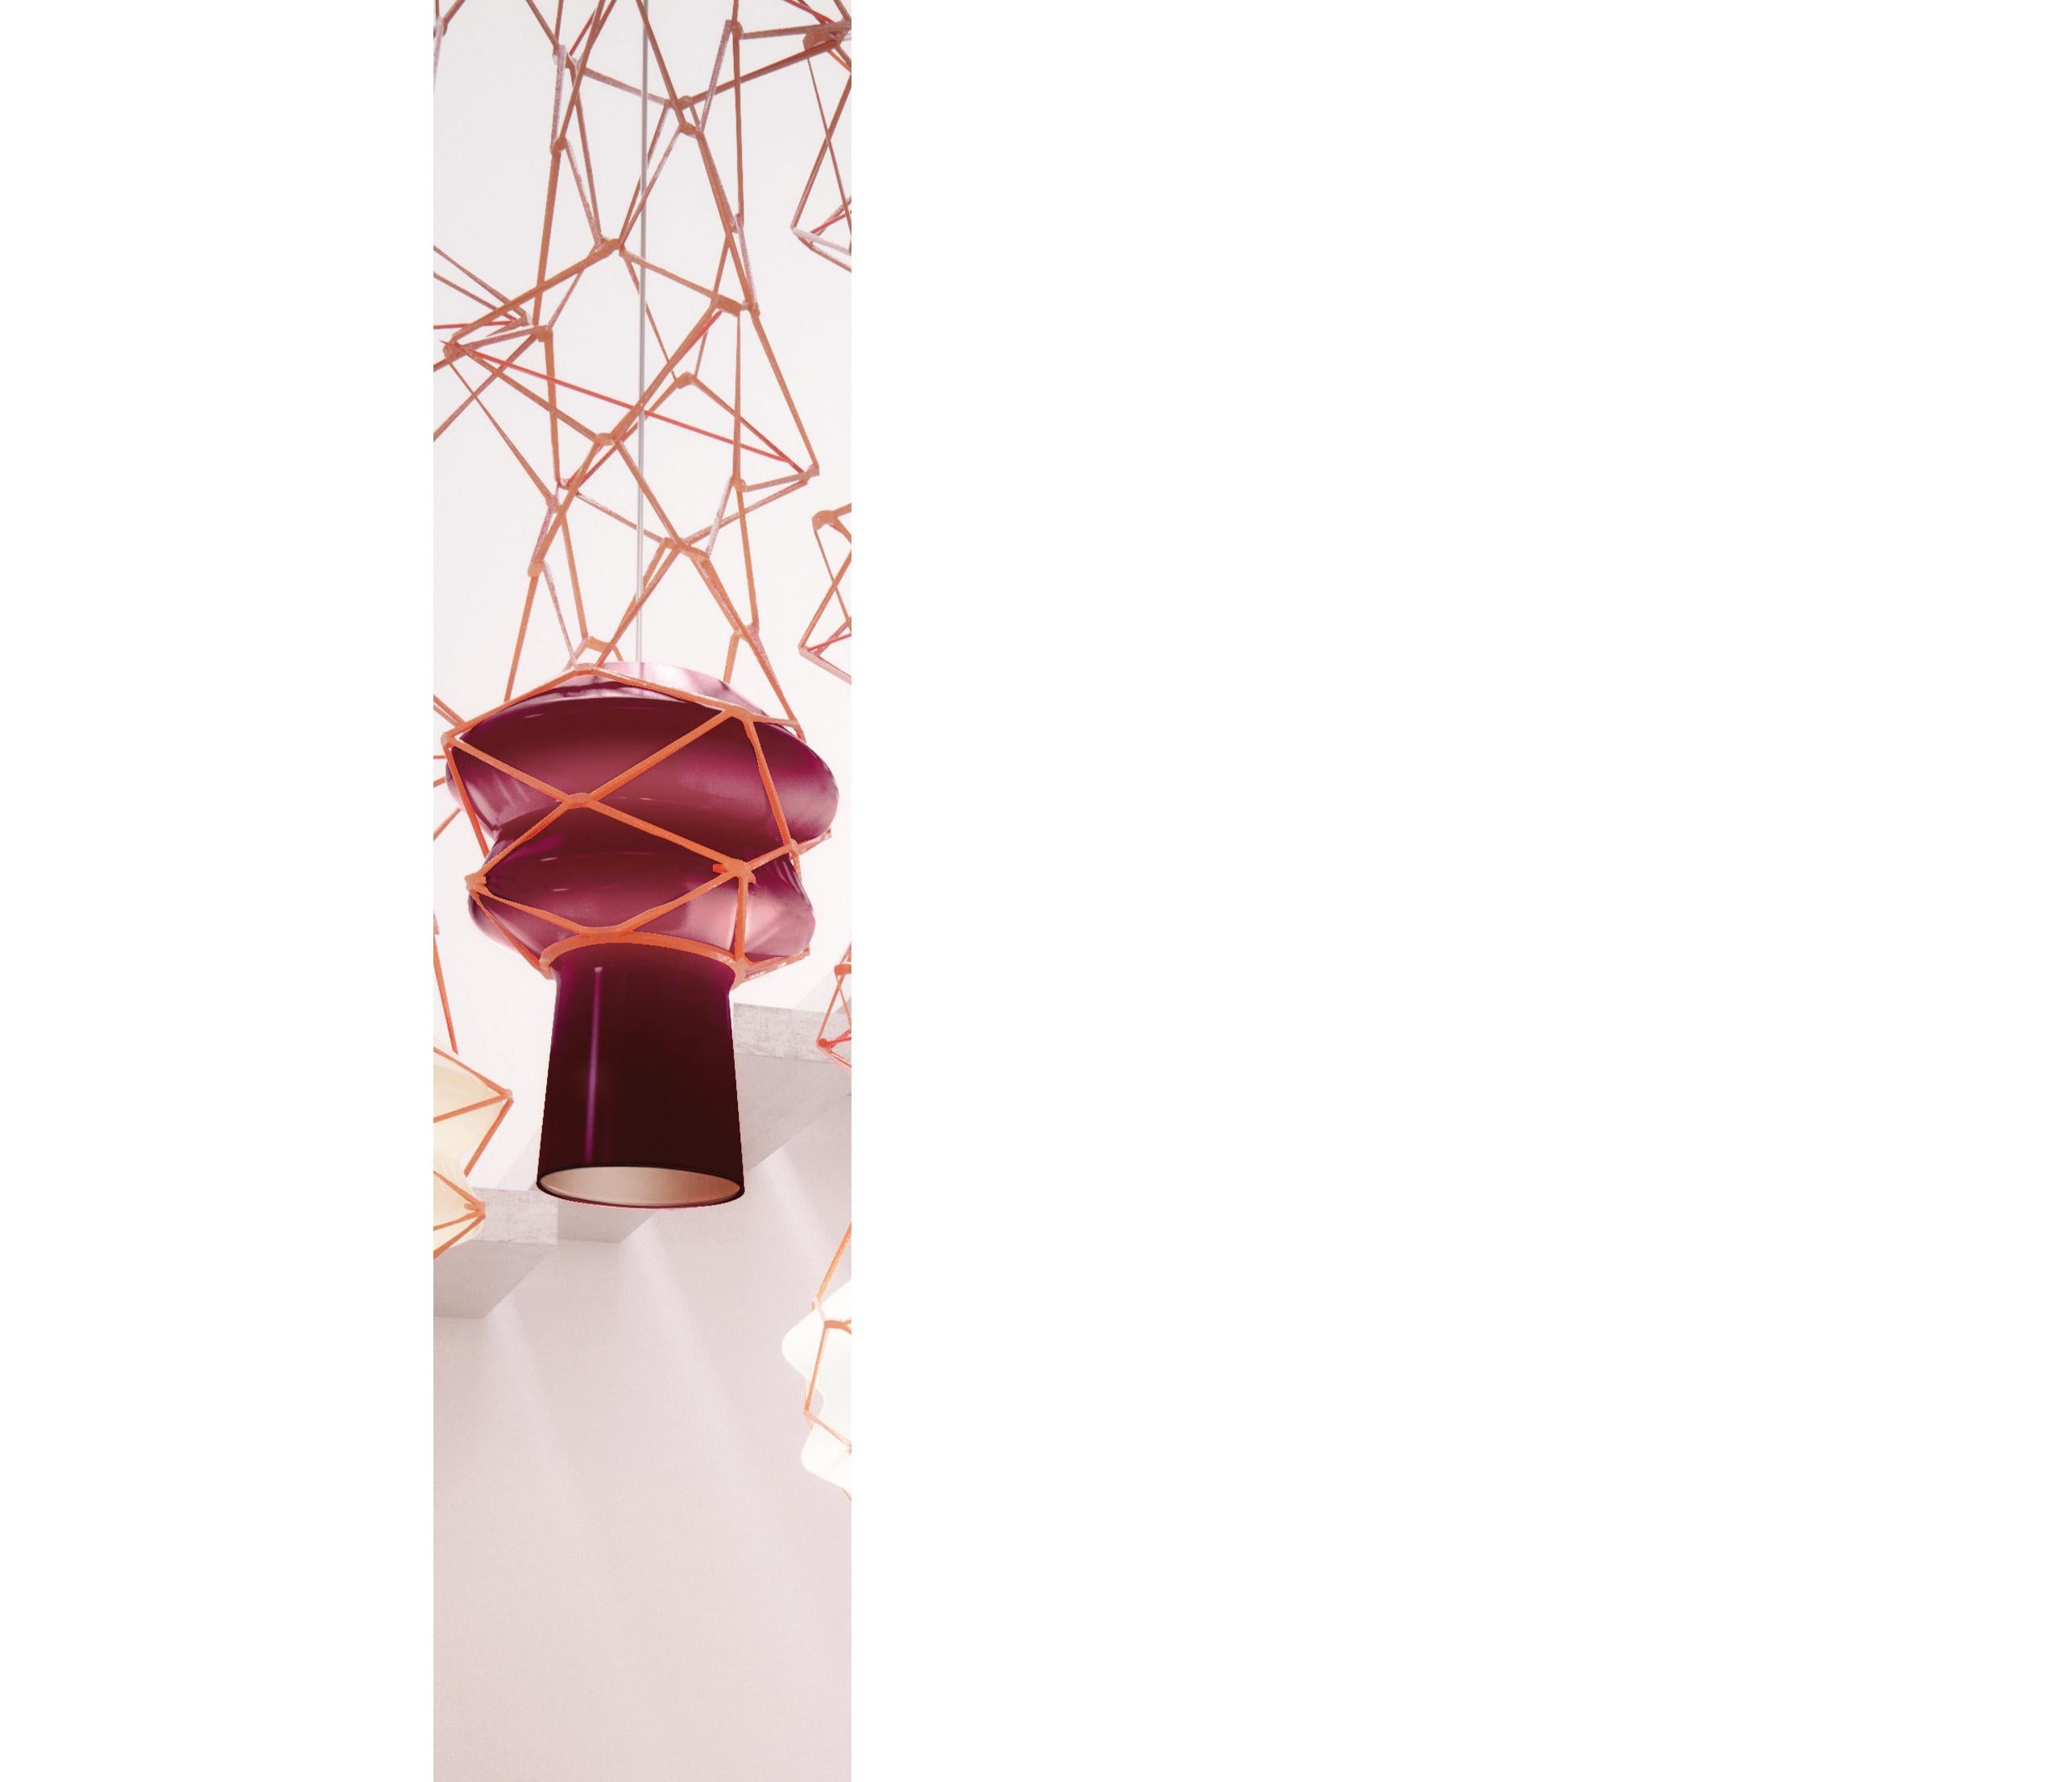 Die vom Atelier Oï entworfene und von Venini hergestellte Hängeleuchte Stelle Filanti hat eine Struktur aus Leder. Erhältlich in drei verschiedenen Farben. Nur für den Innenbereich.

Abmessungen: Ø 30 cm, H 220 cm.